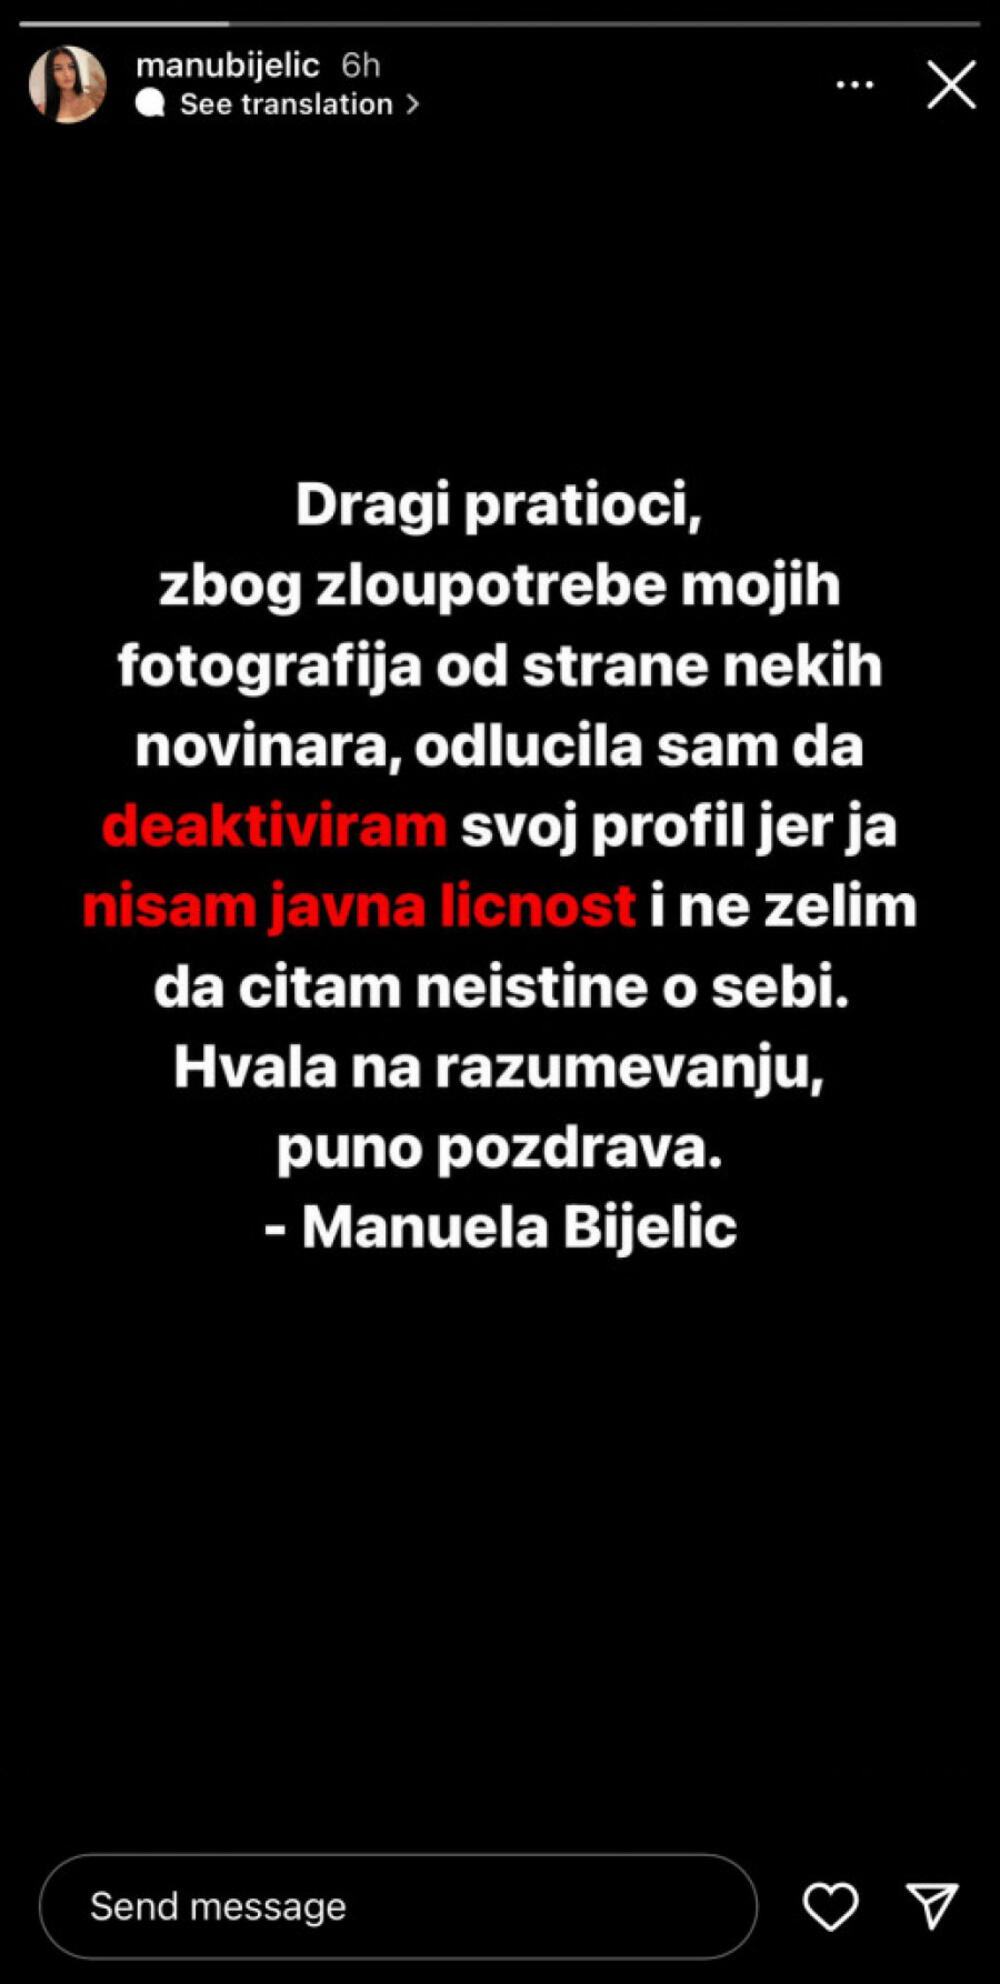 Manuela Bijelić